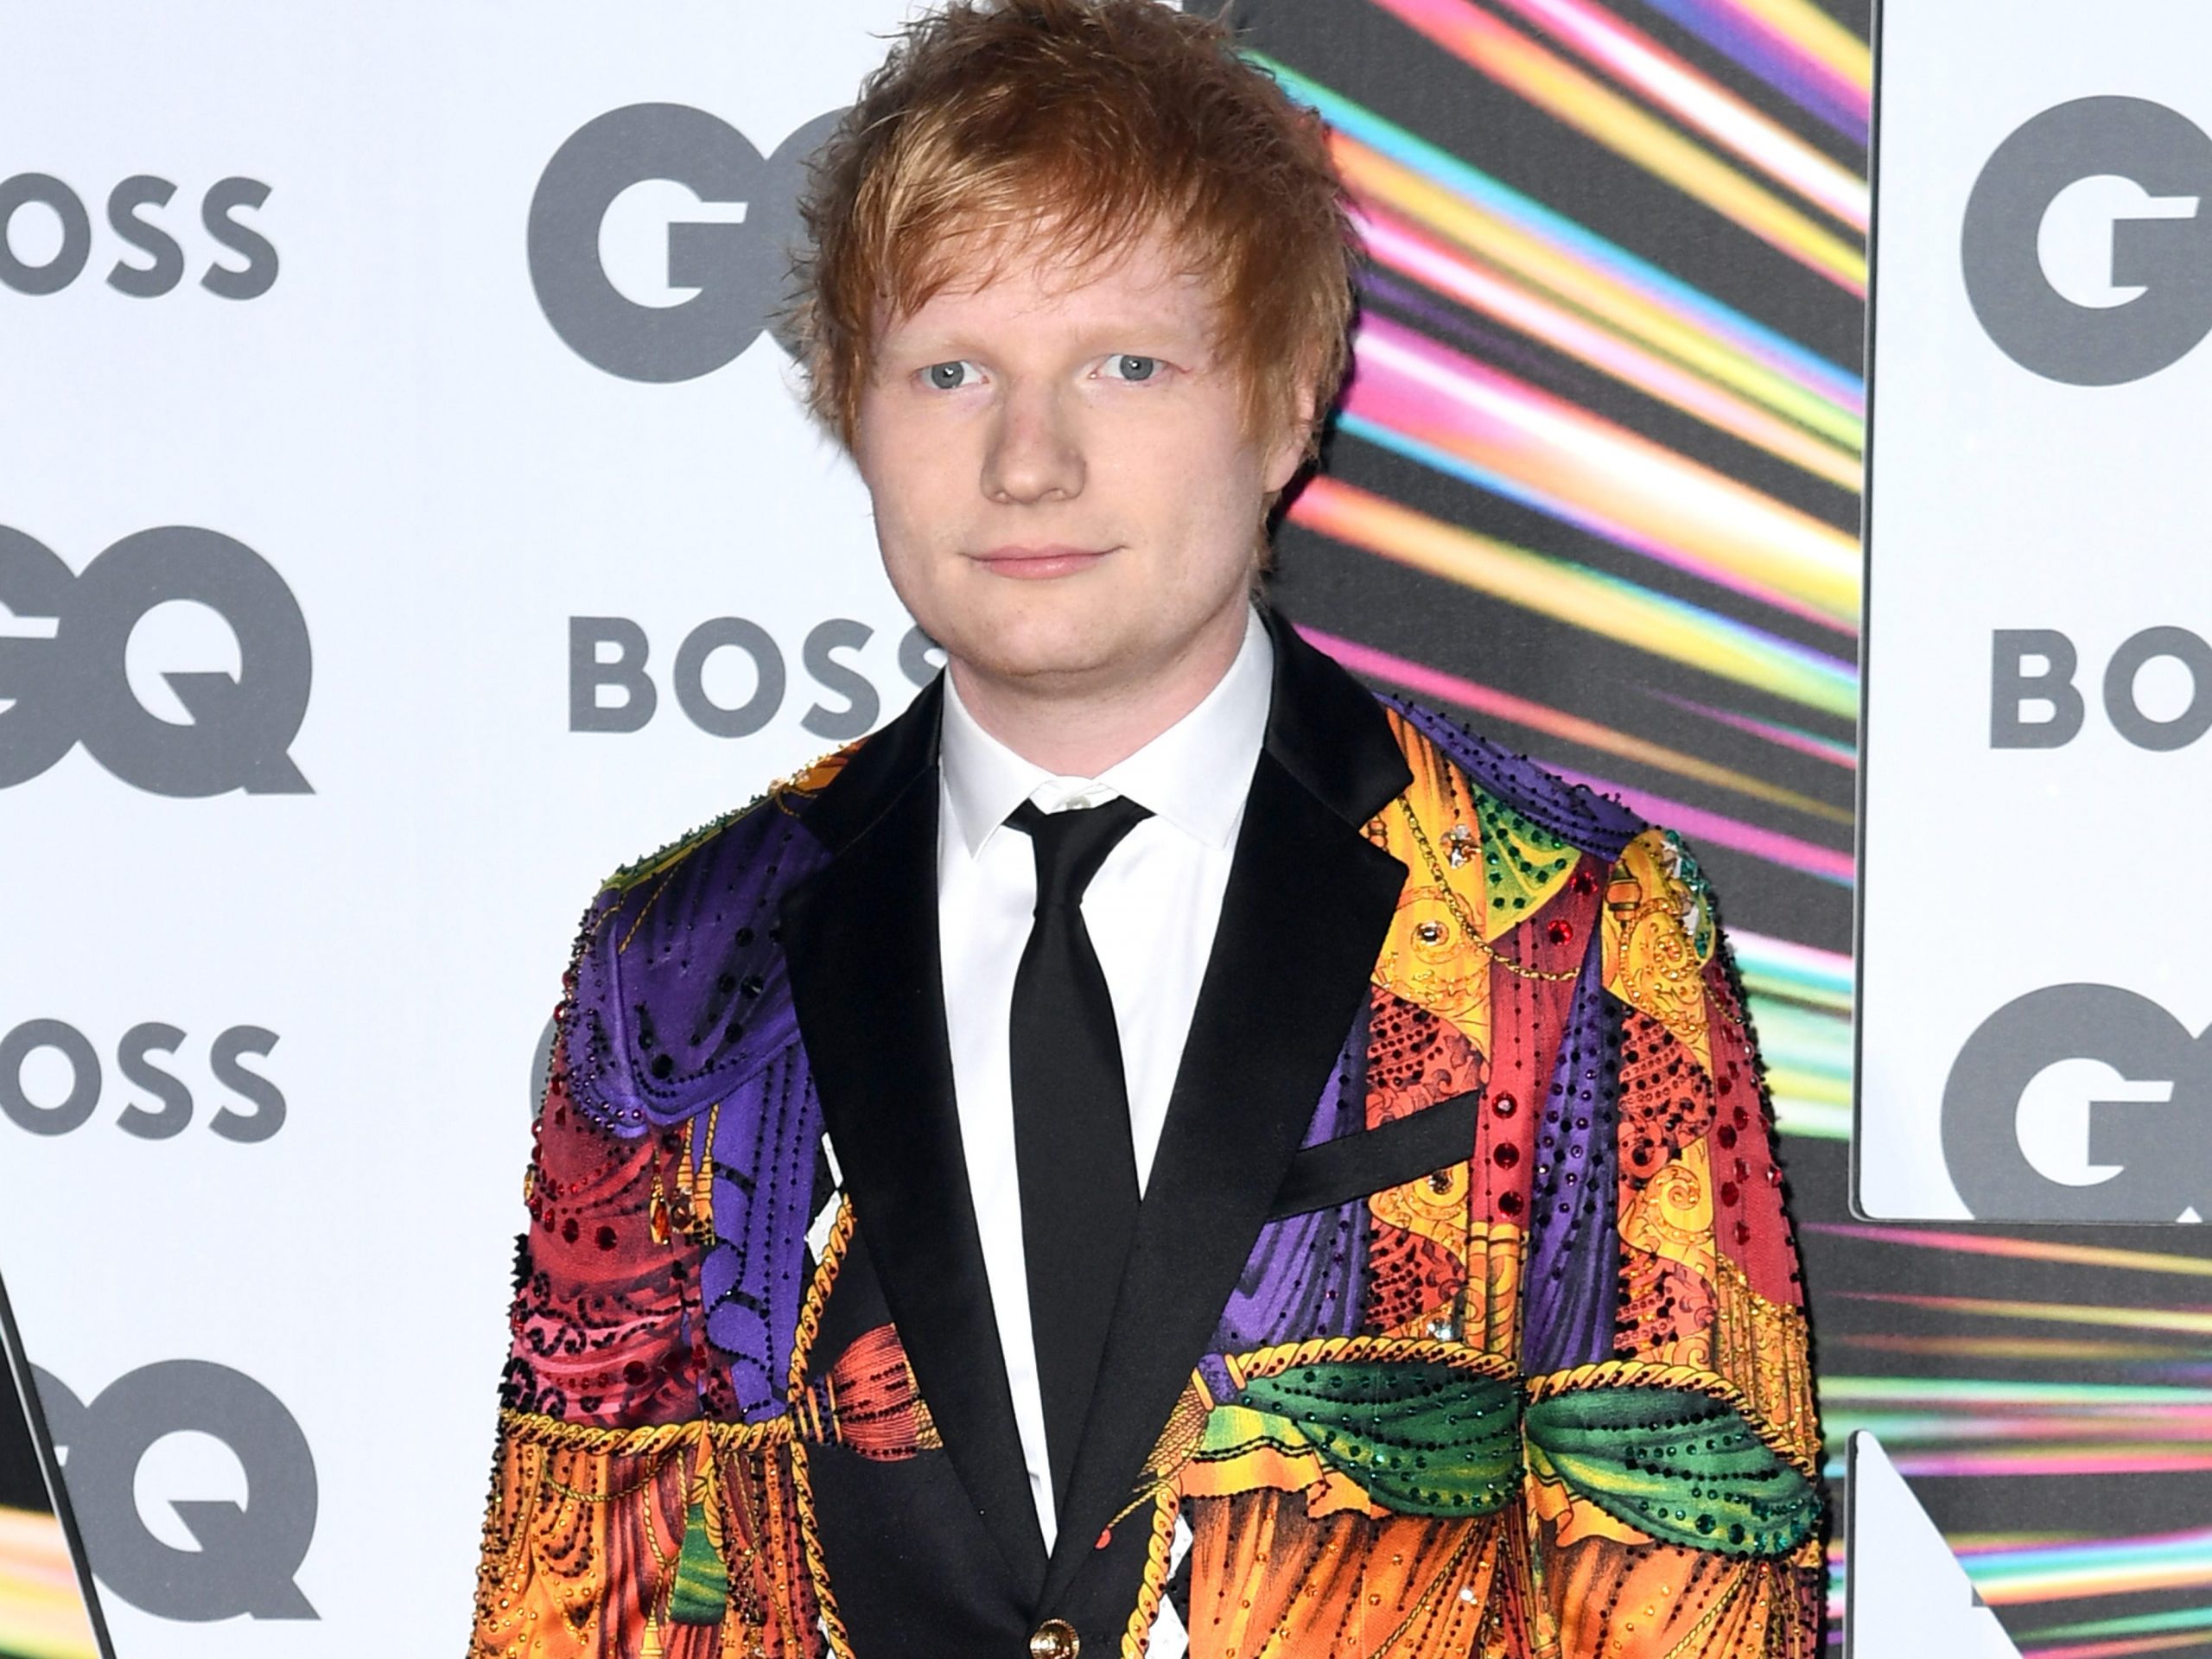 Ed Sheeran at the GQ Men Of The Year Awards 2021